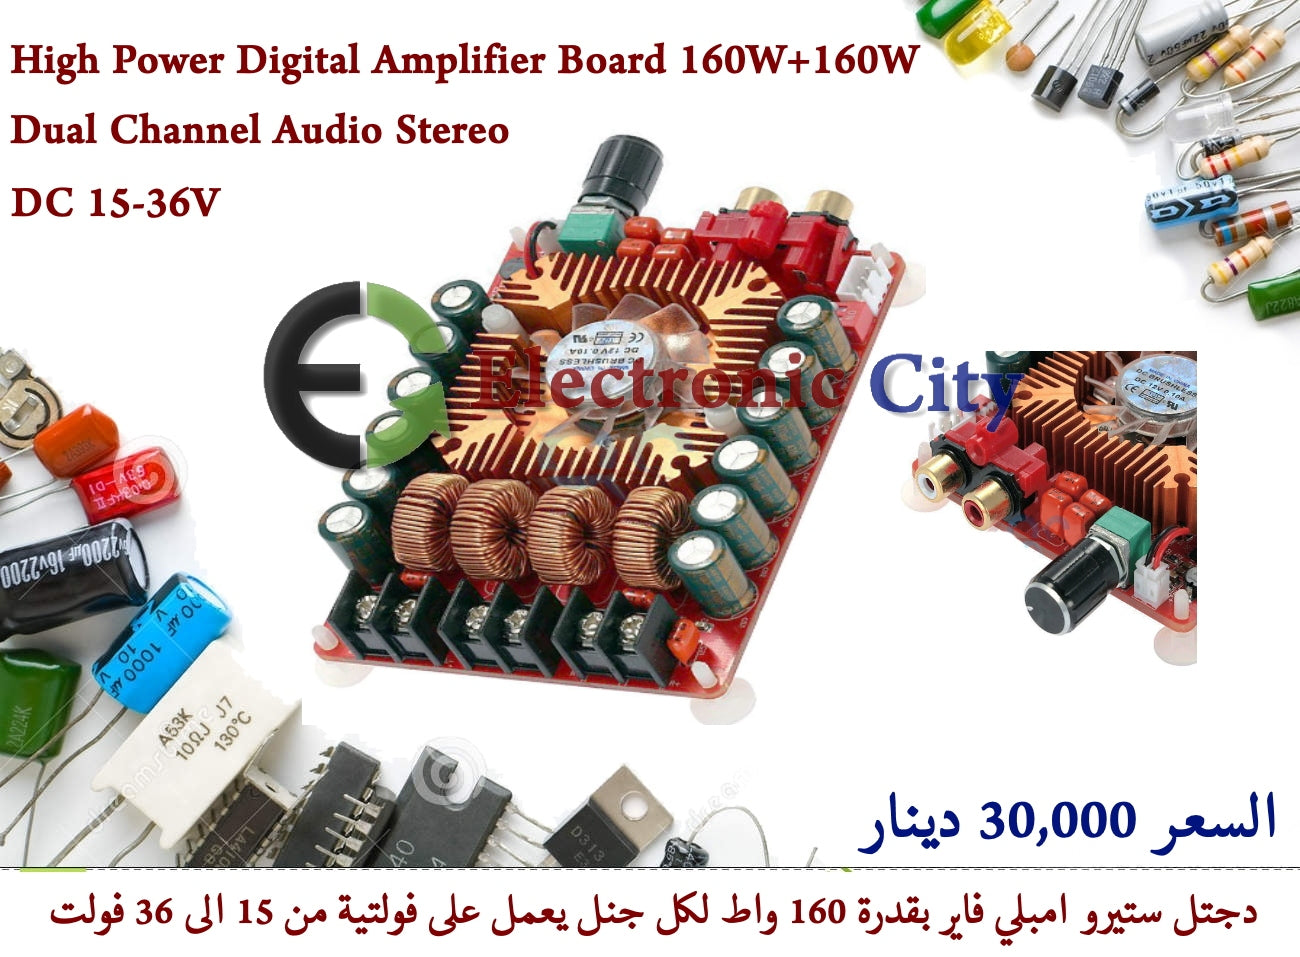 High Power Digital Amplifier Board 160W+160W Dual Channel Audio Stereo  #L5 011485